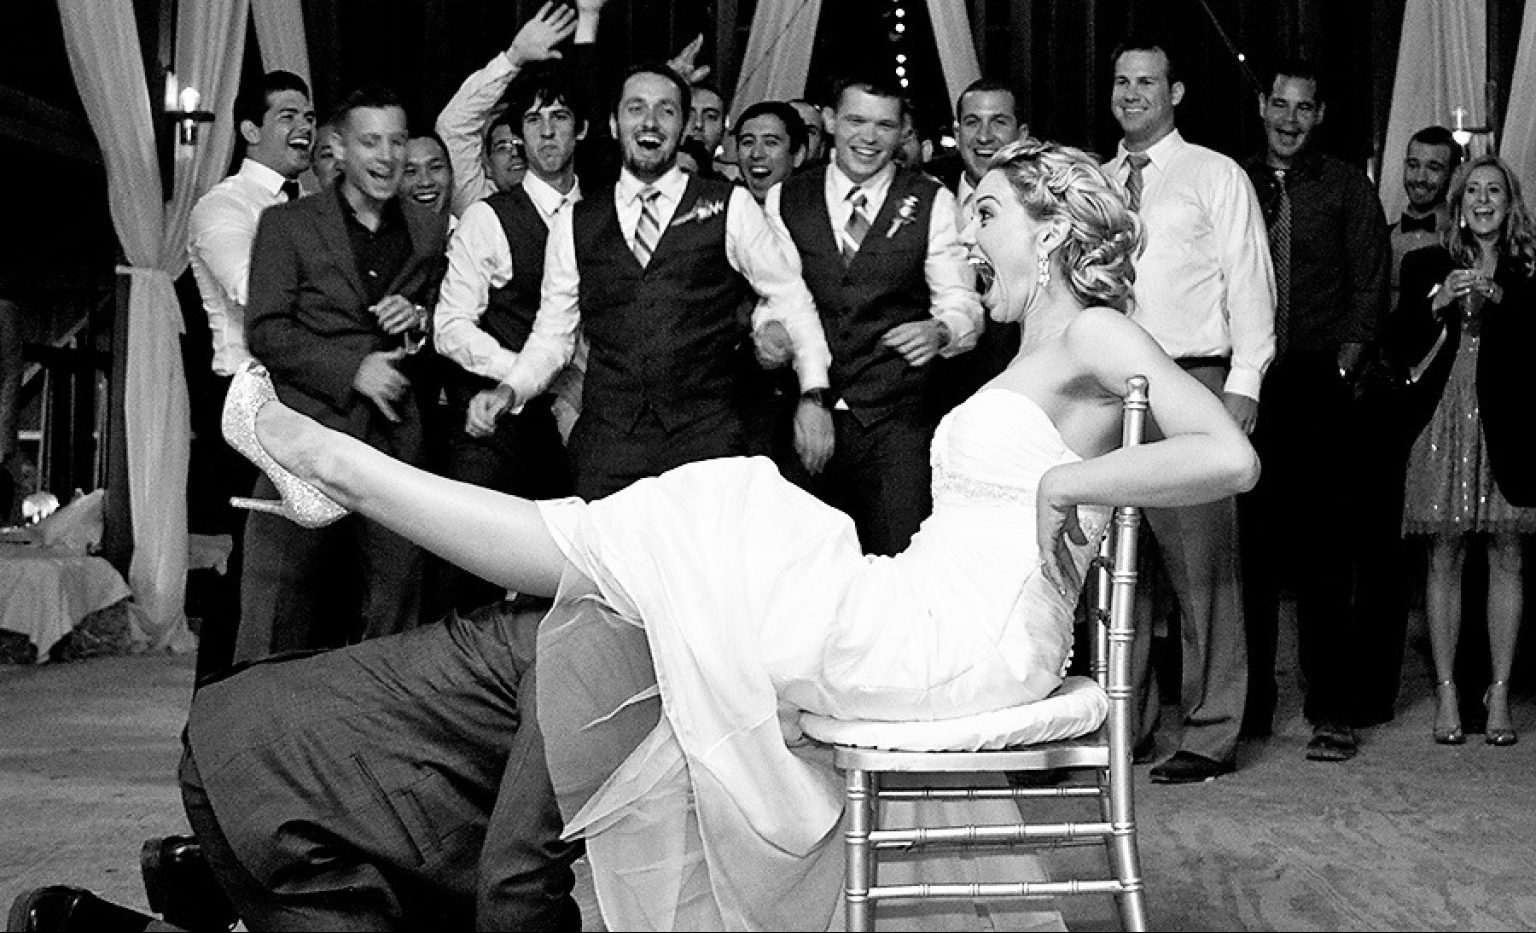 Друг жениха воспользовался пиздой невесты за час до свадьбы